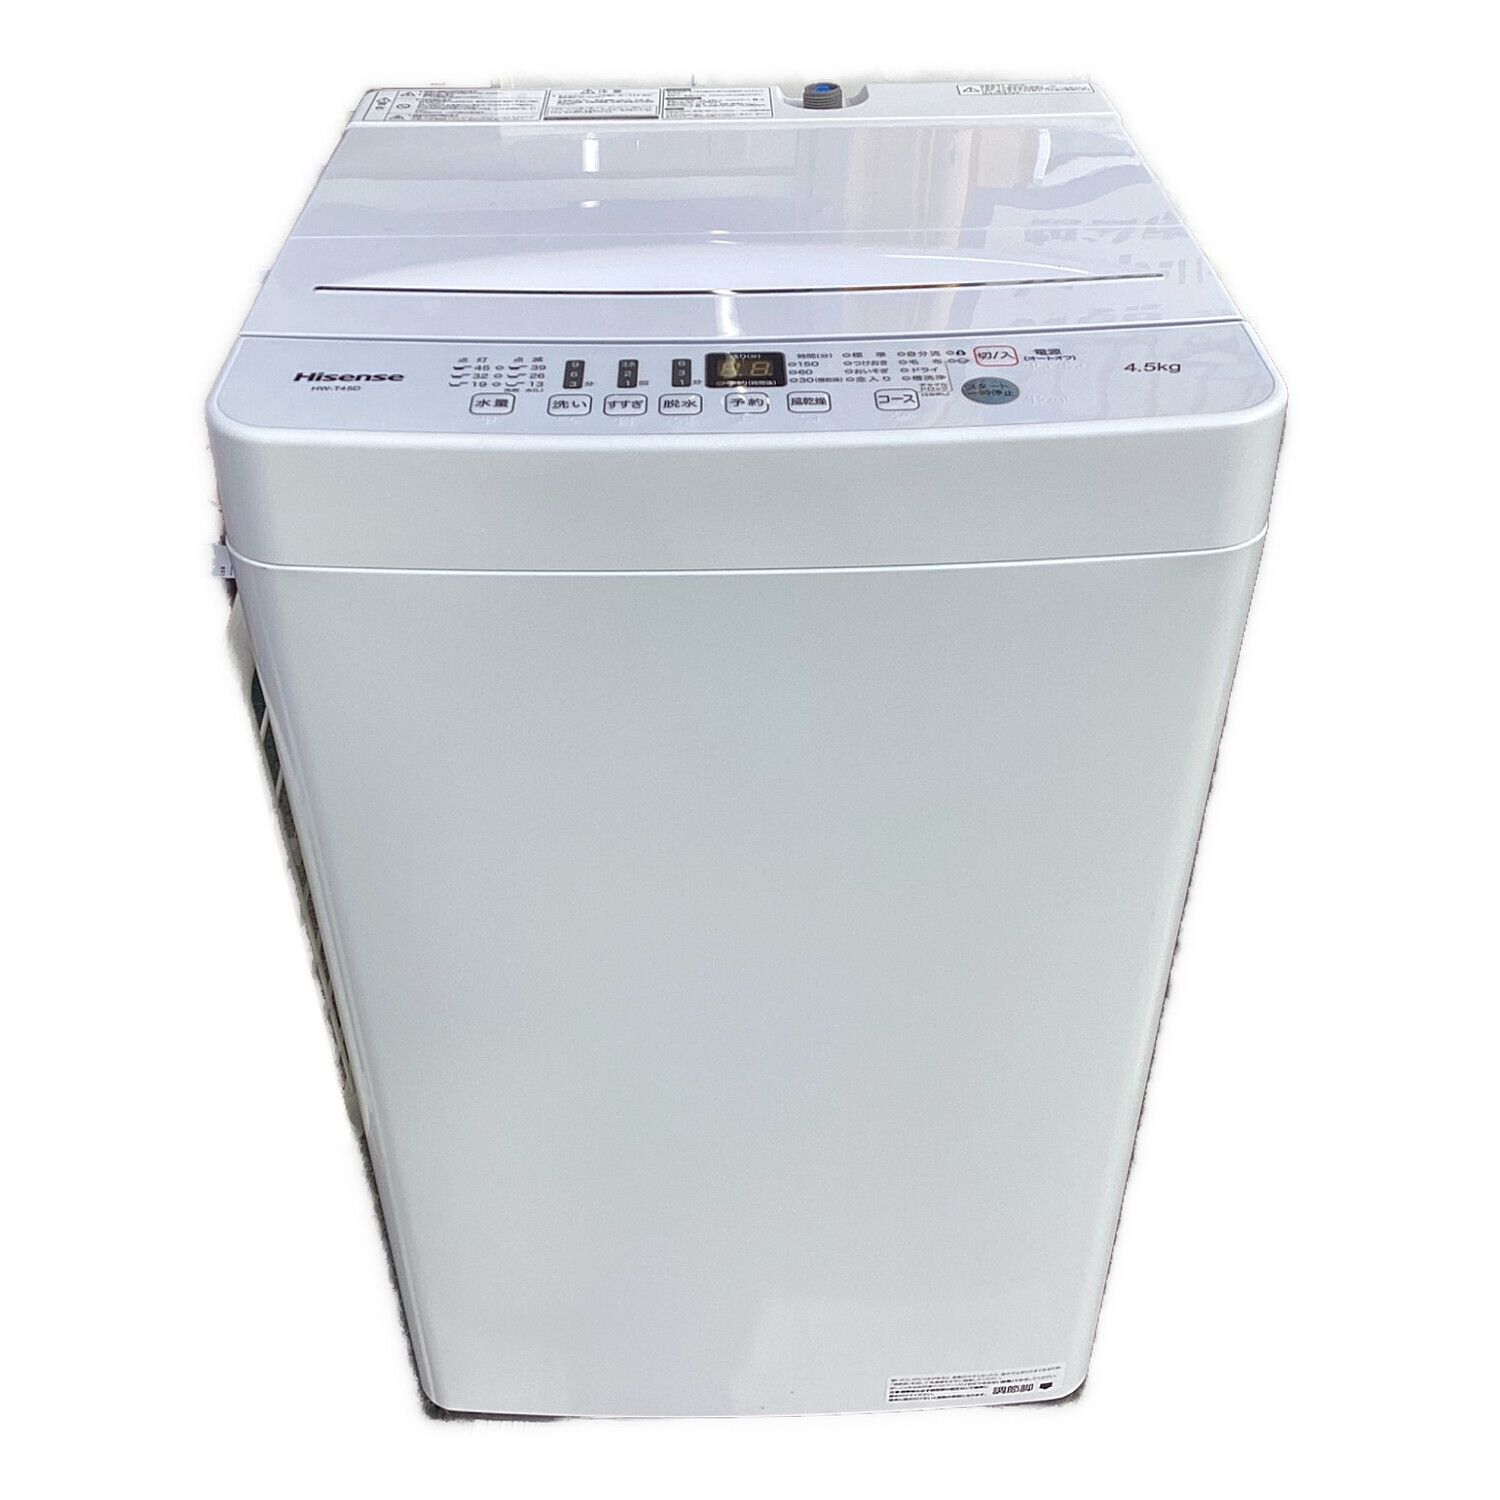 2021年式 ハイセンス 4．5kg全自動洗濯機 エディオンオリジナル 